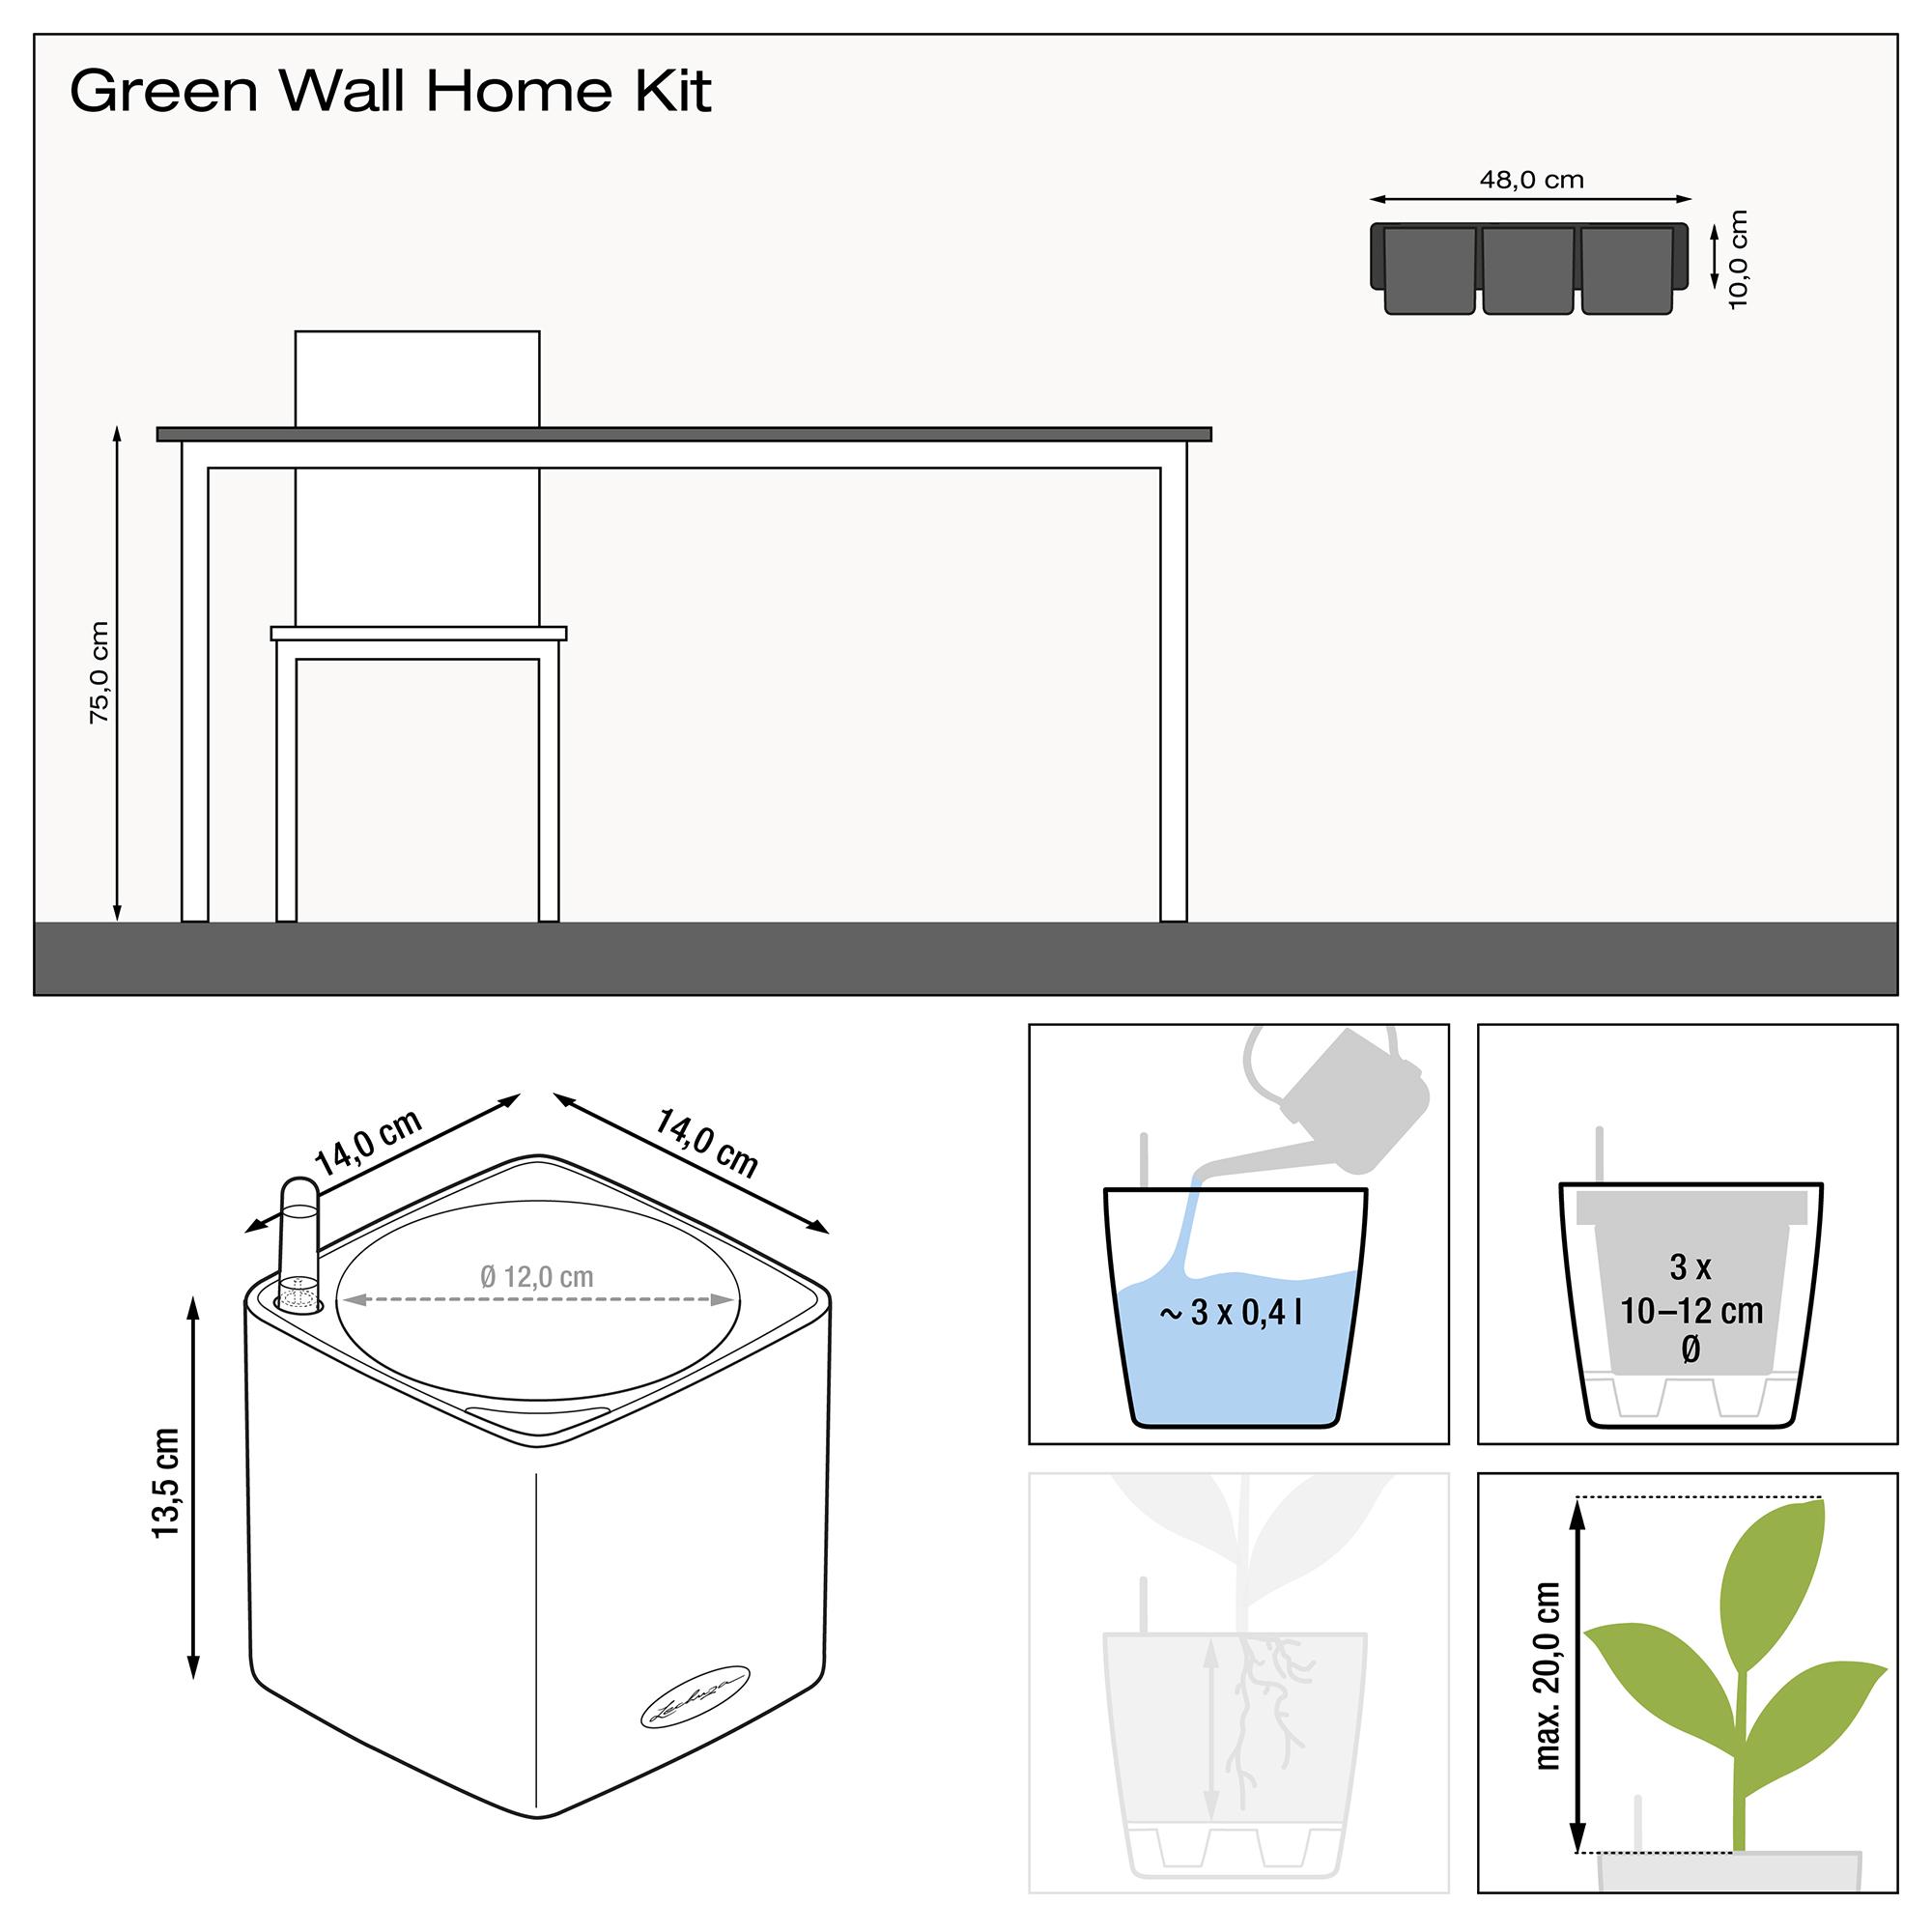 Green Wall Home Kit Color leisteengrijs additional thumb 2